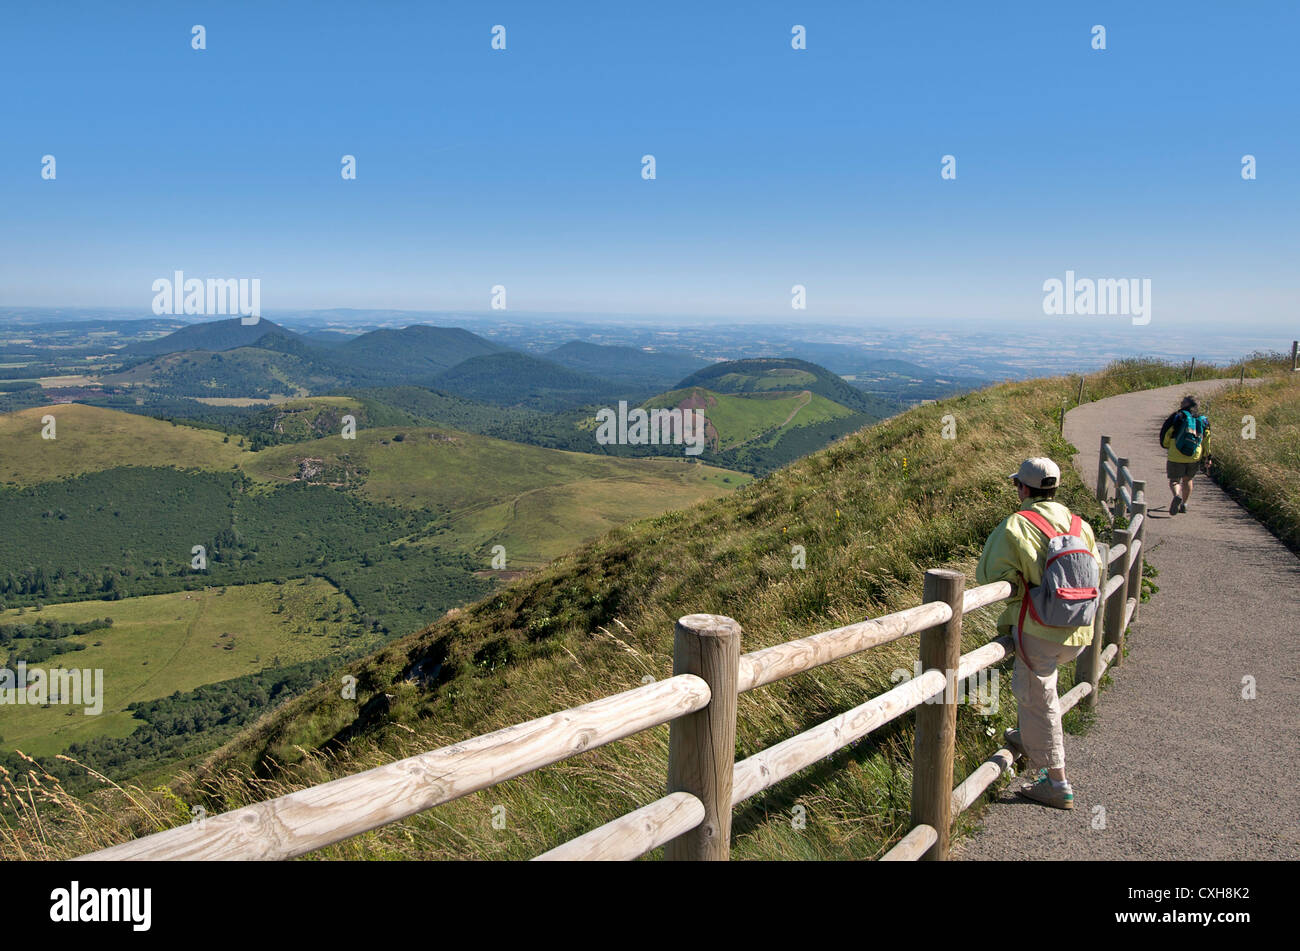 Le randonneur vue depuis le Puy-de-Dôme sur le paysage volcanique de la chaîne des Puys, Auvergne, France. Banque D'Images